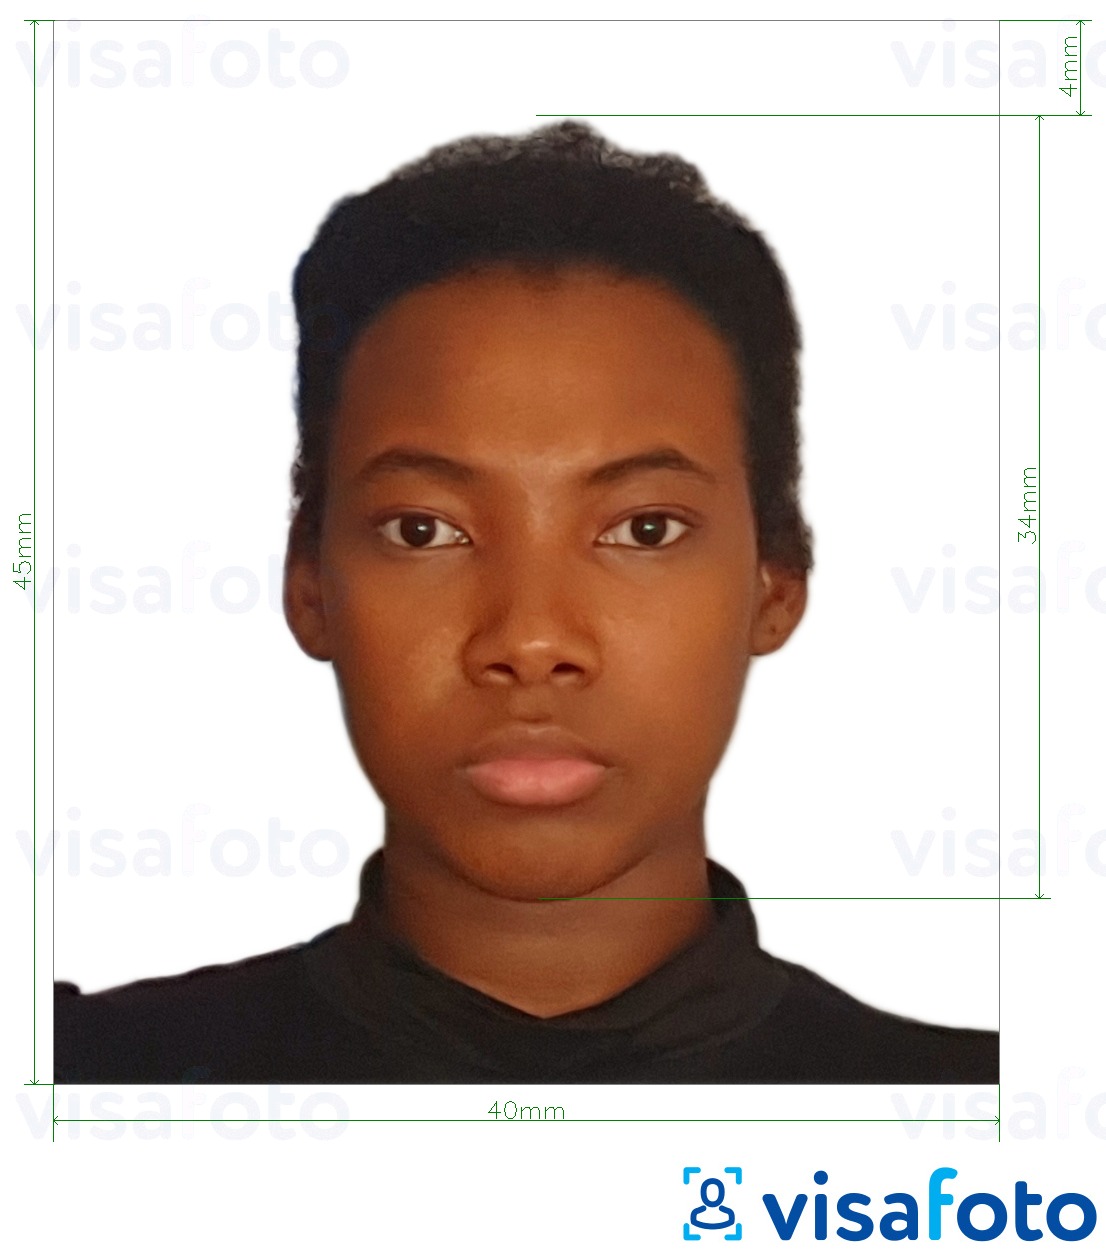 写真の例 タンザニアのパスポート40 x 45 mm（4 x 4.5 cm） 正確なサイズ仕様に